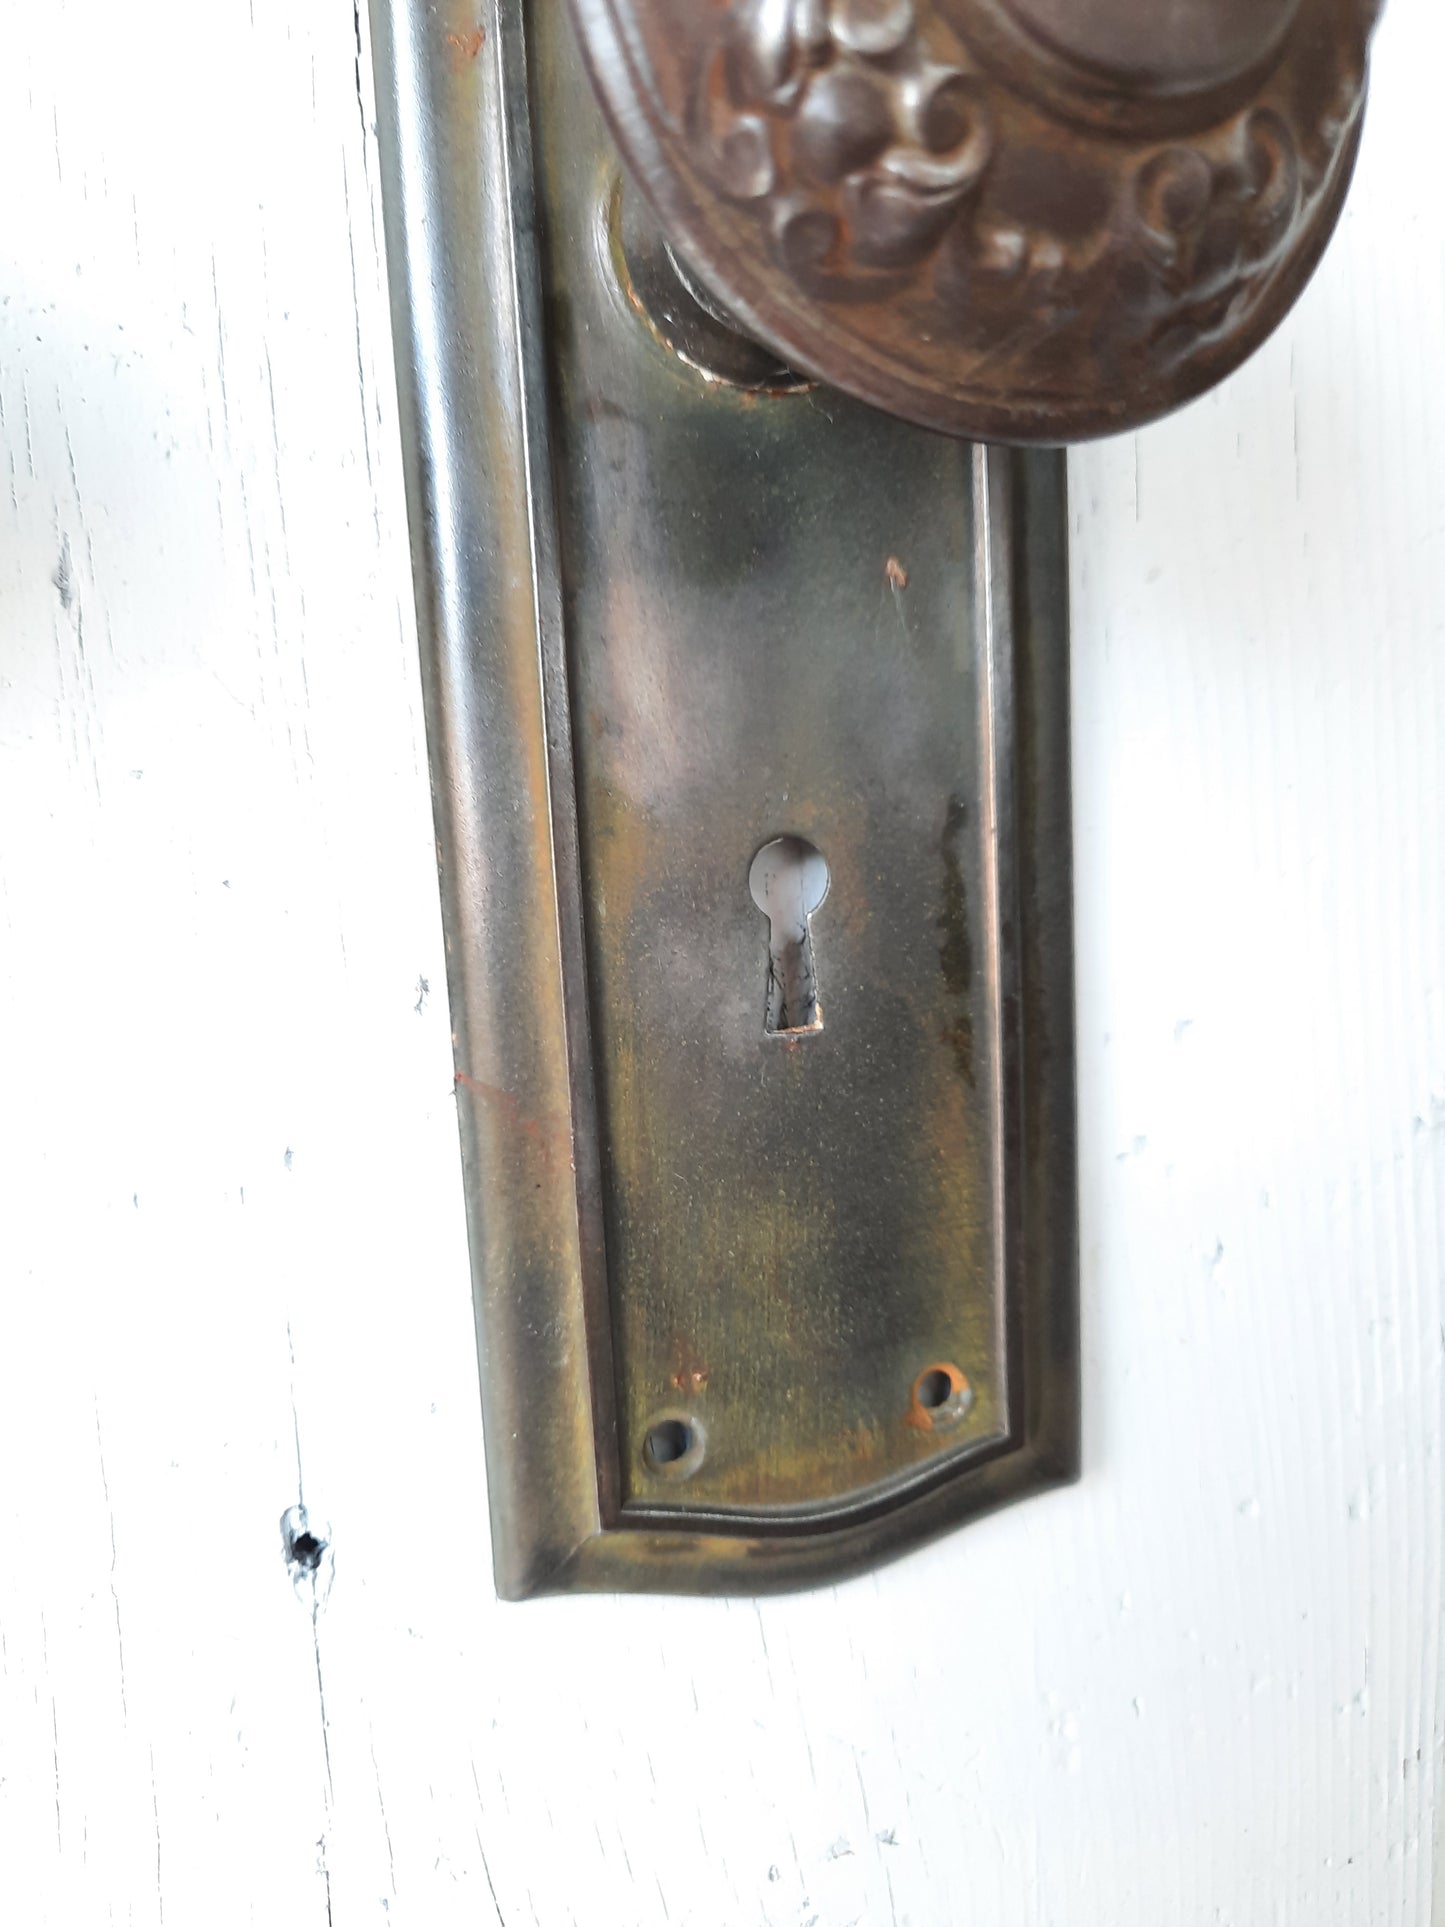 Deco Door Plates with Antique Floral Pattern Doorknobs, Door Backplates and Knob Set, Door Hardware